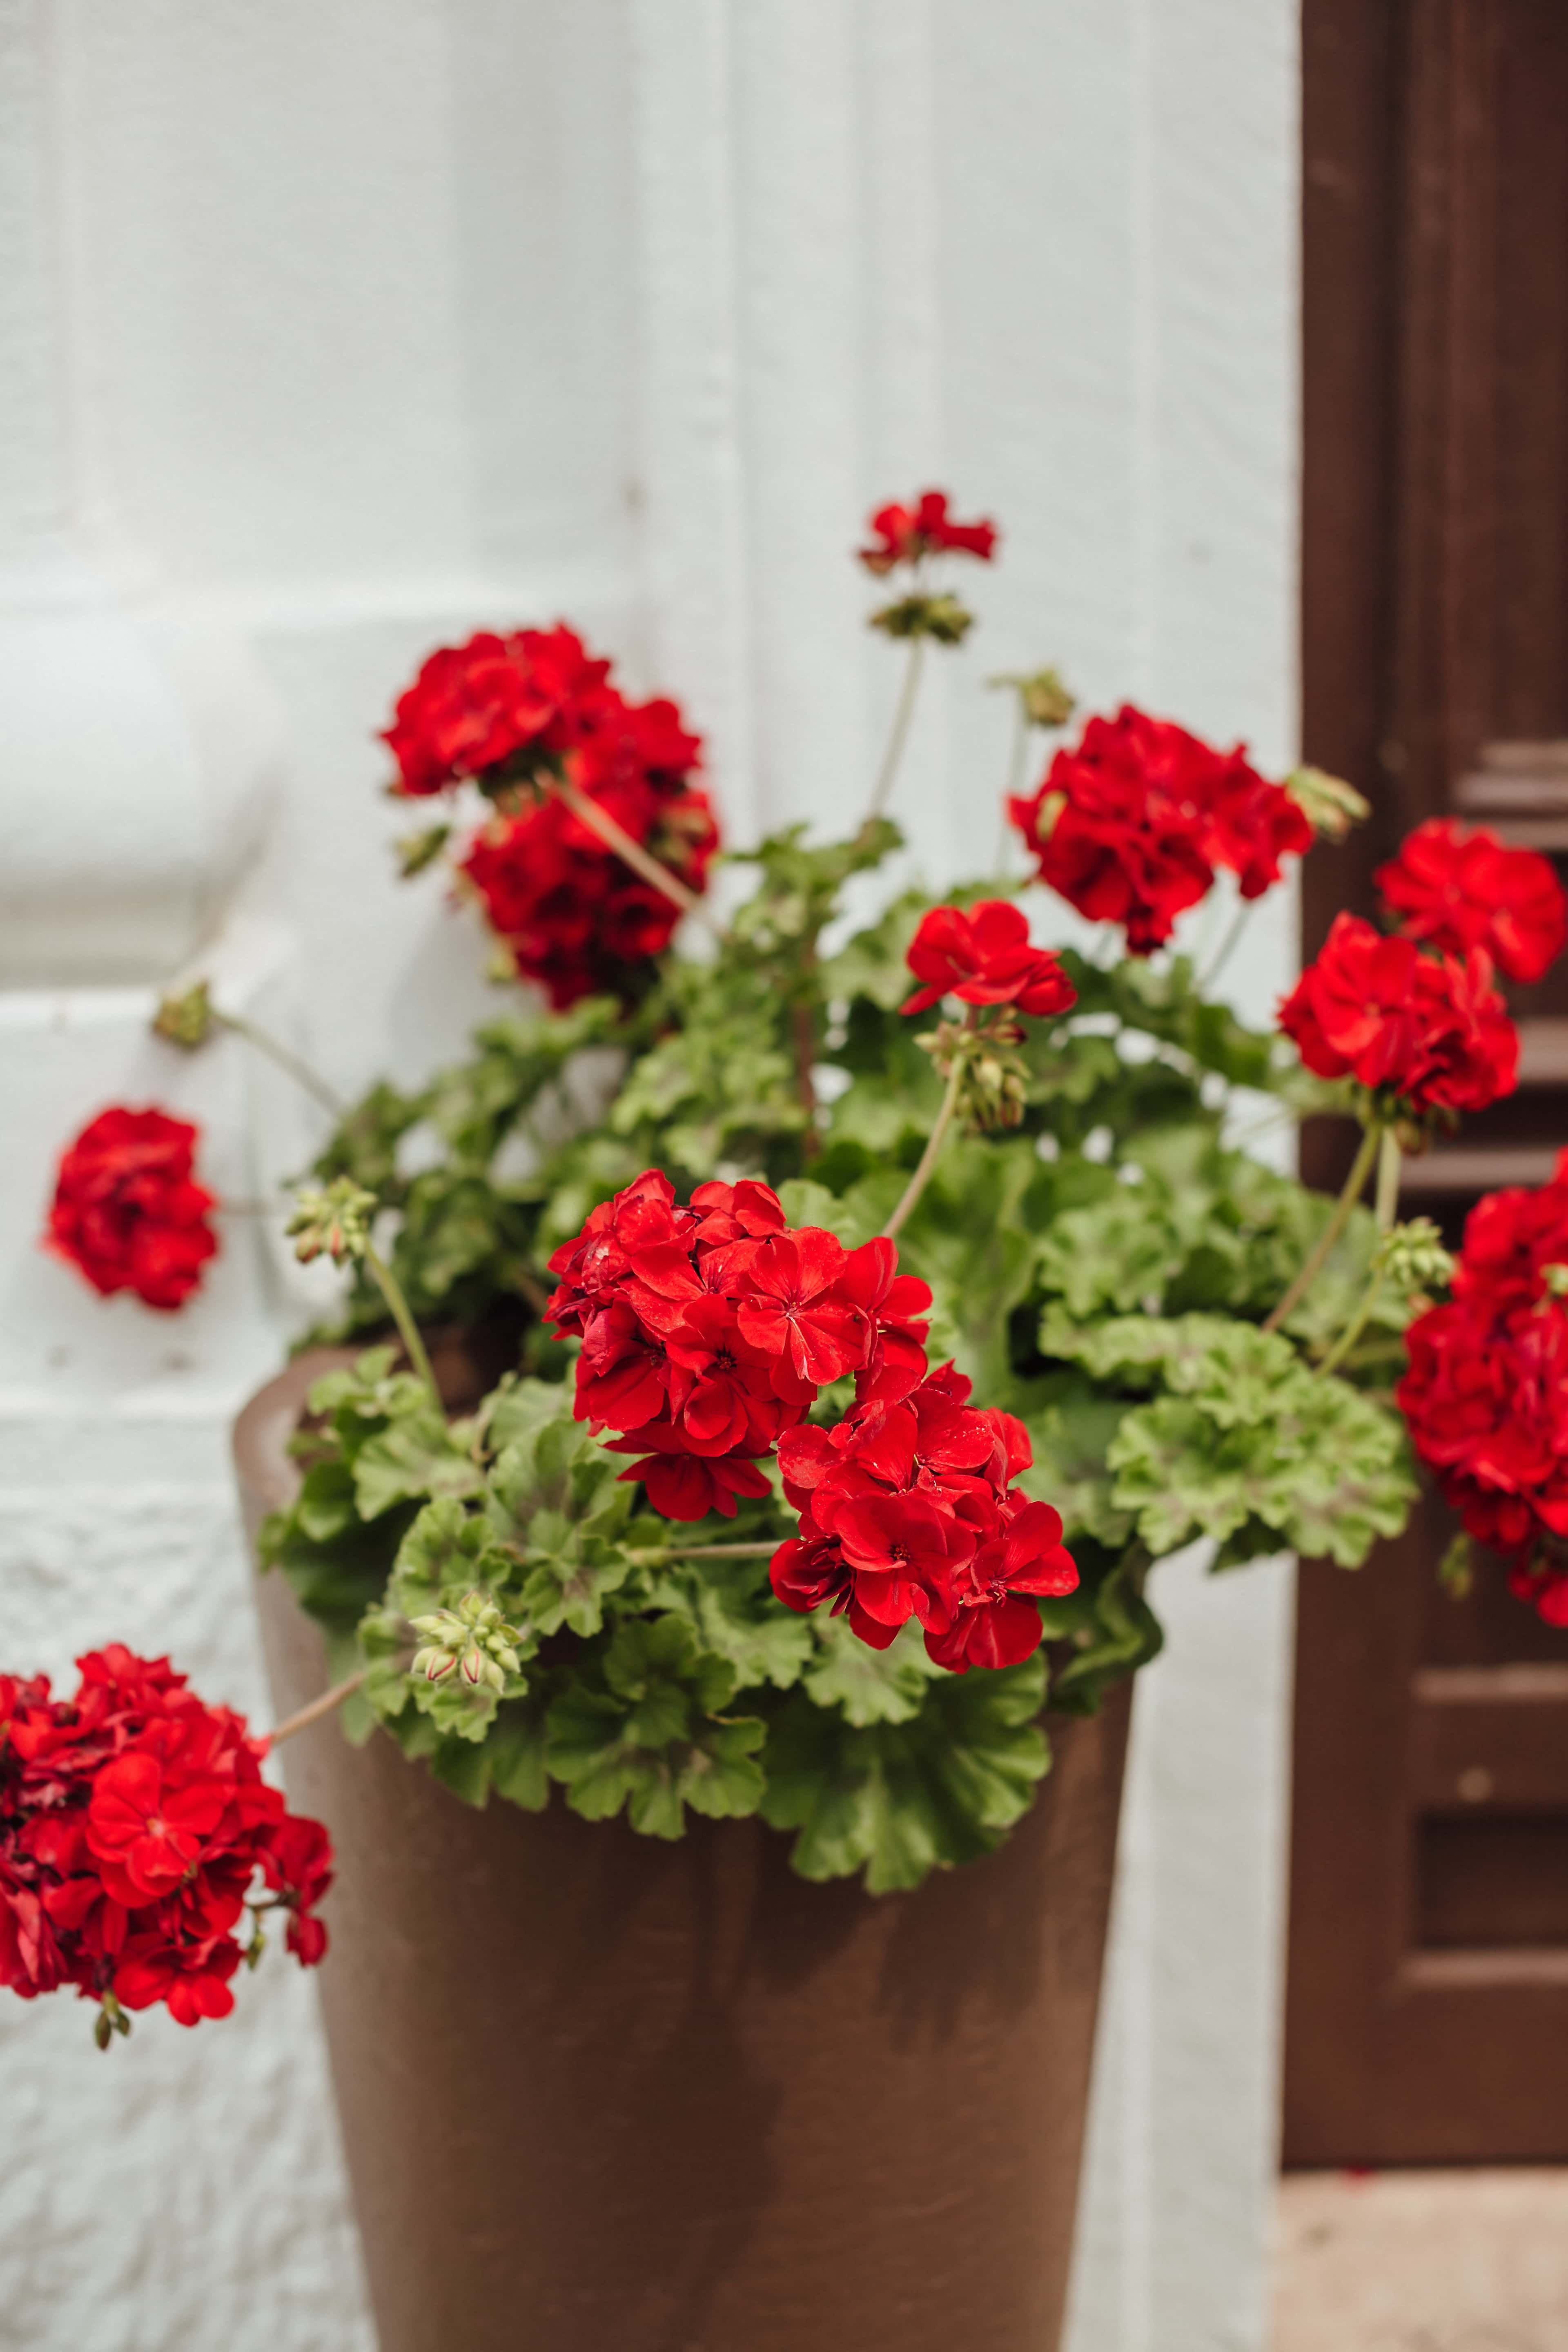 红色花盆配啥植物好看图片